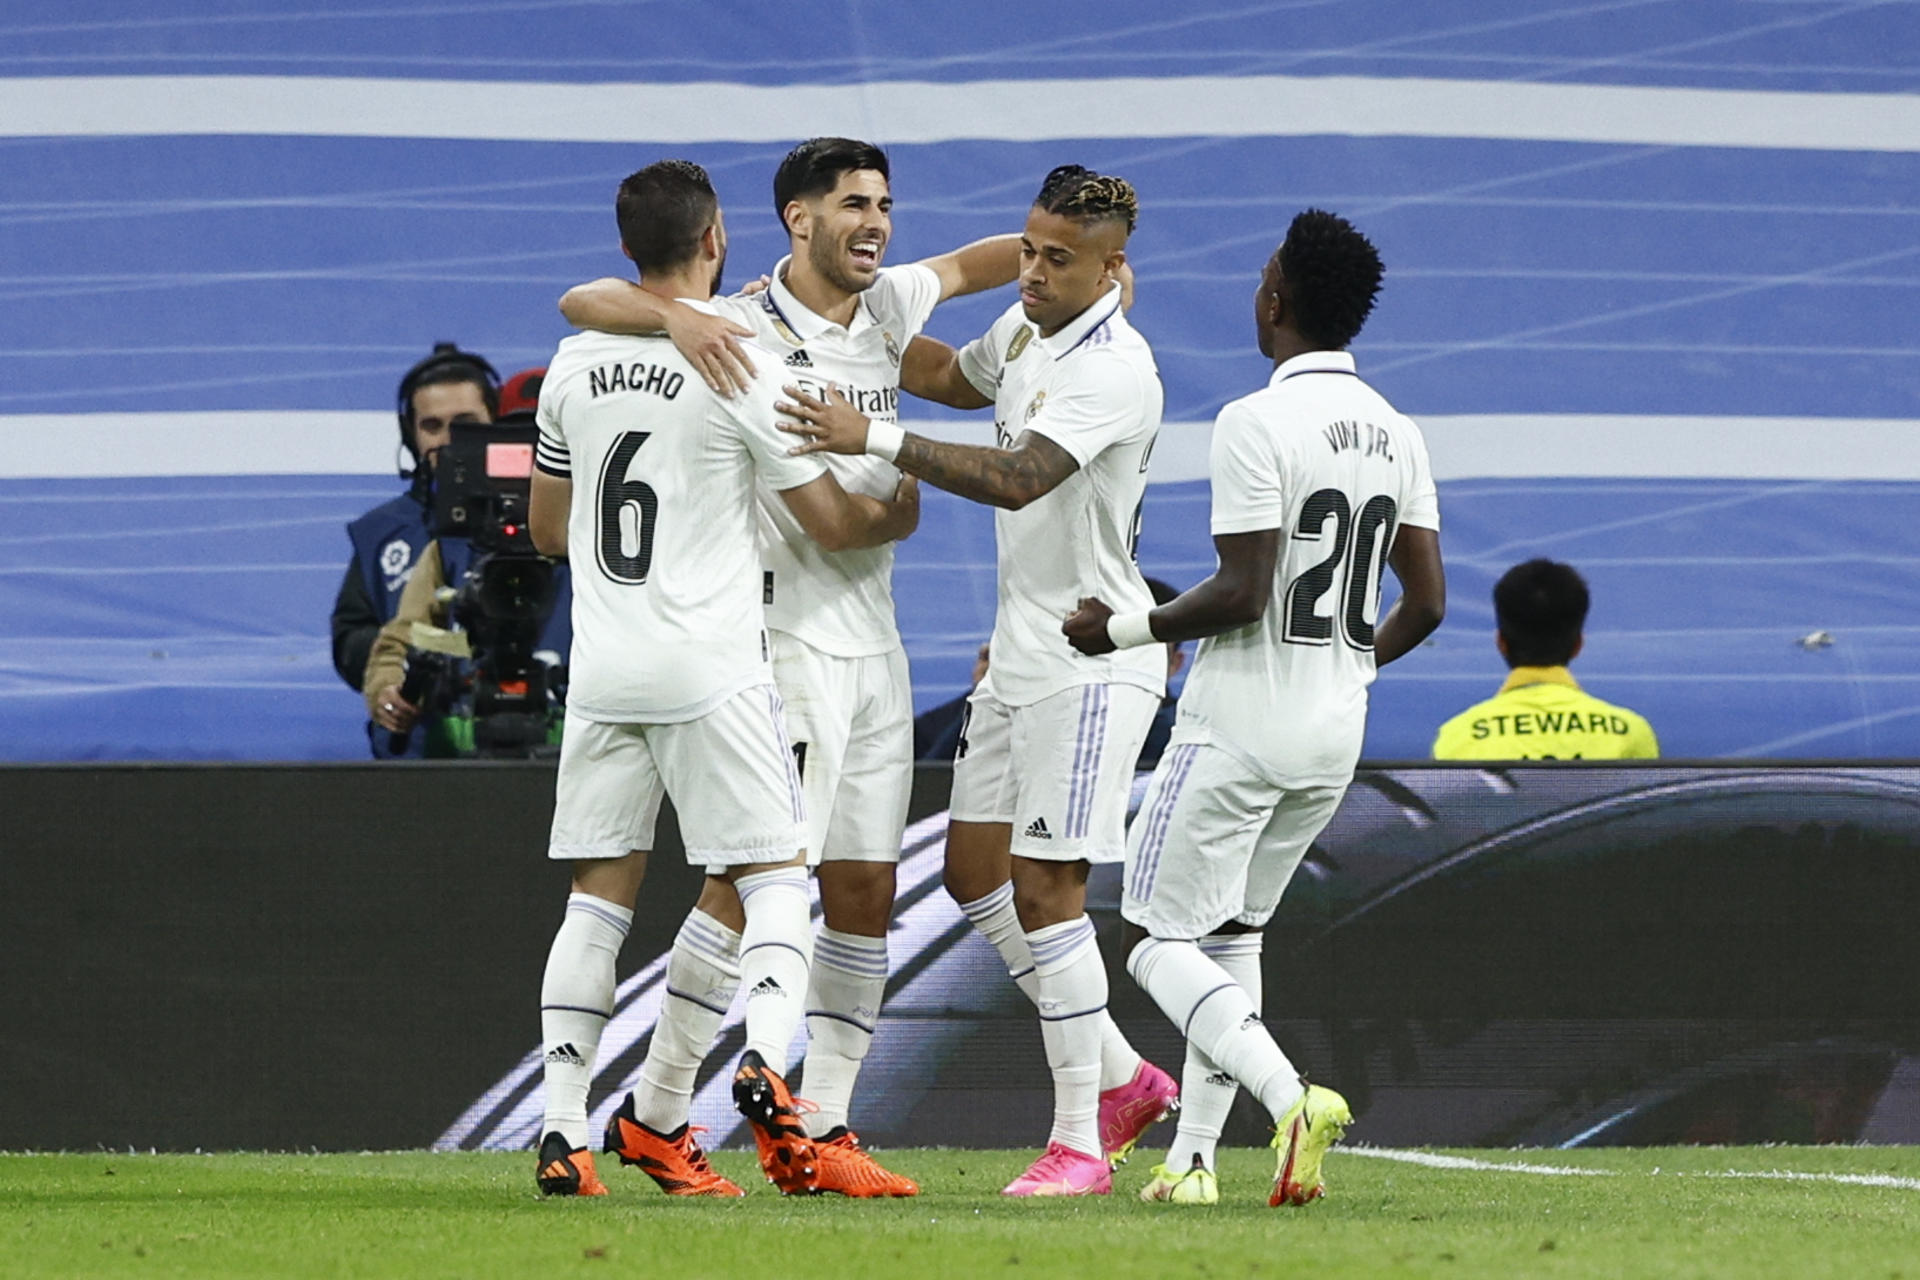 Jugadores del Real Madrid celebran un gol, en una fotografía de archivo. EFE/ Rodrigo Jimenez
